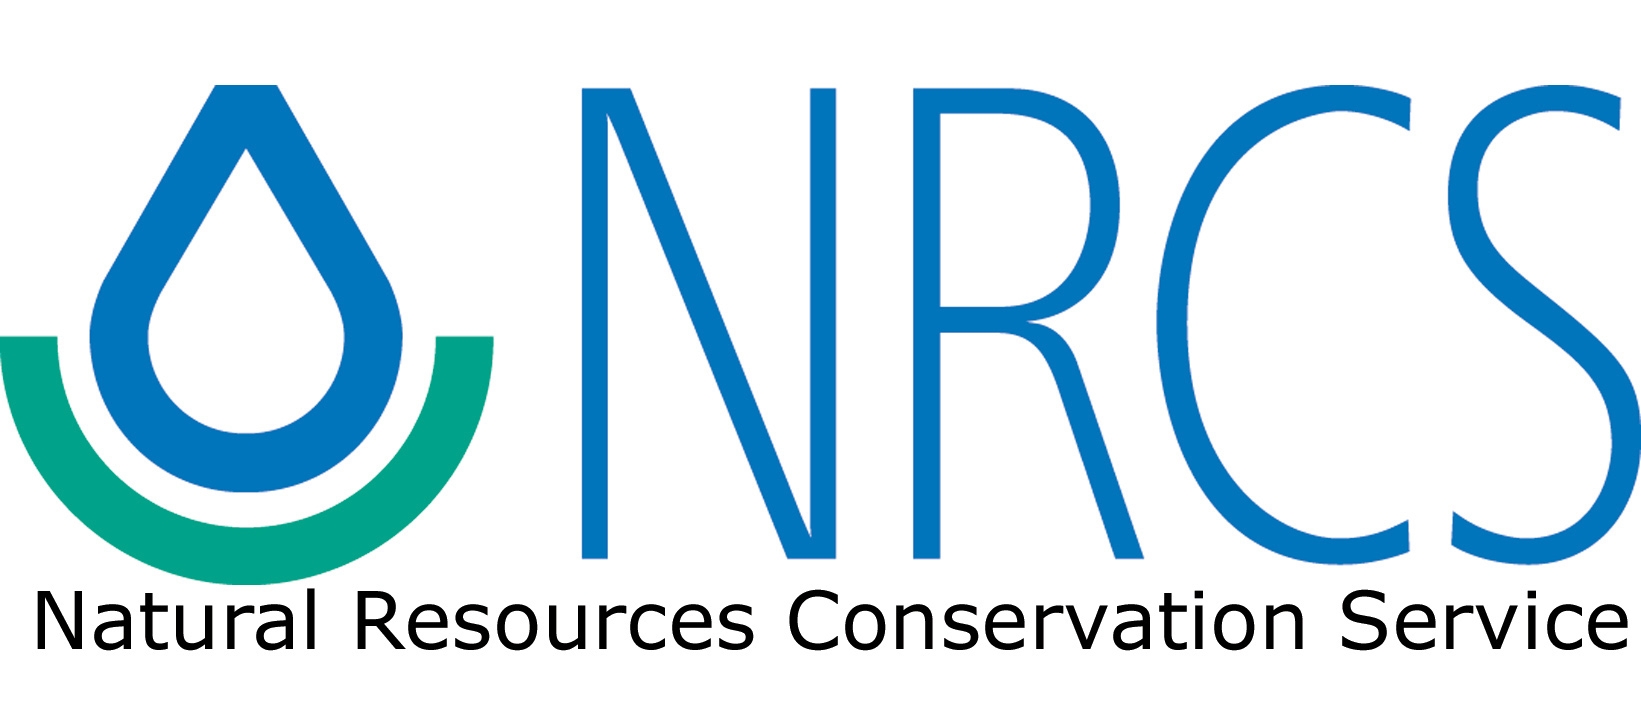 NRCS-logo